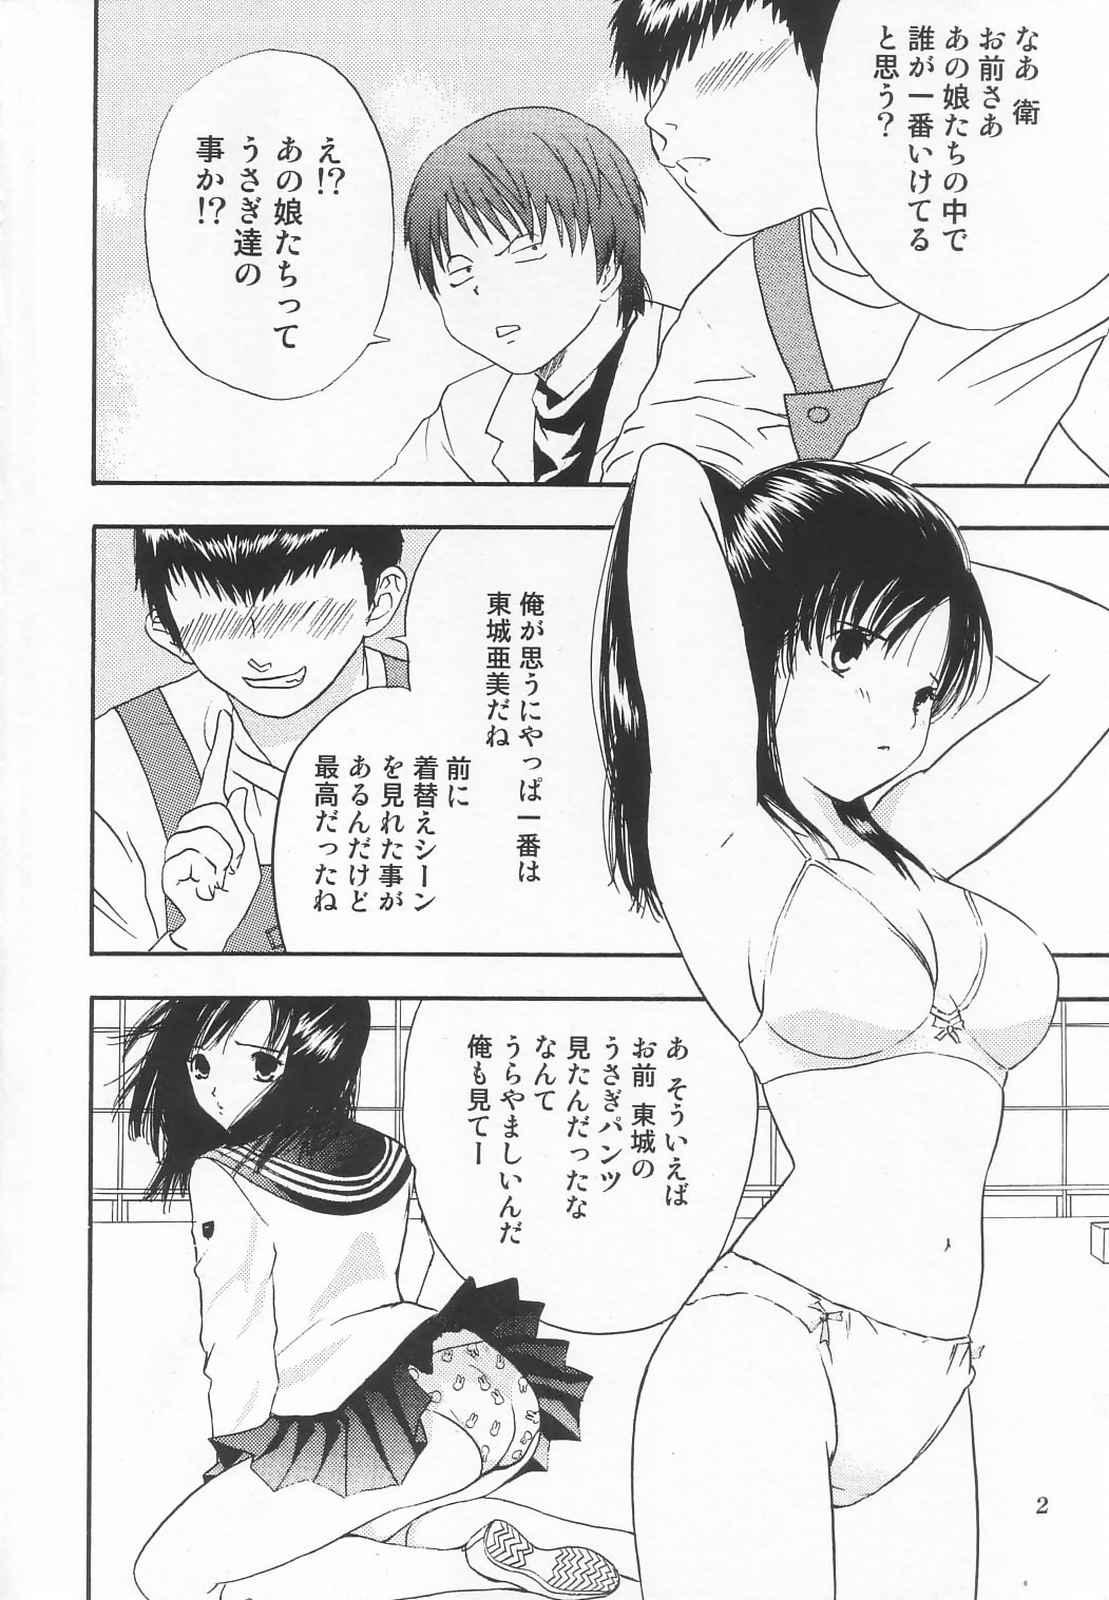 Black Thugs Tokusatsu Magazine x 2003 Fuyu Gou - Sailor moon Ichigo 100 Secret - Page 4